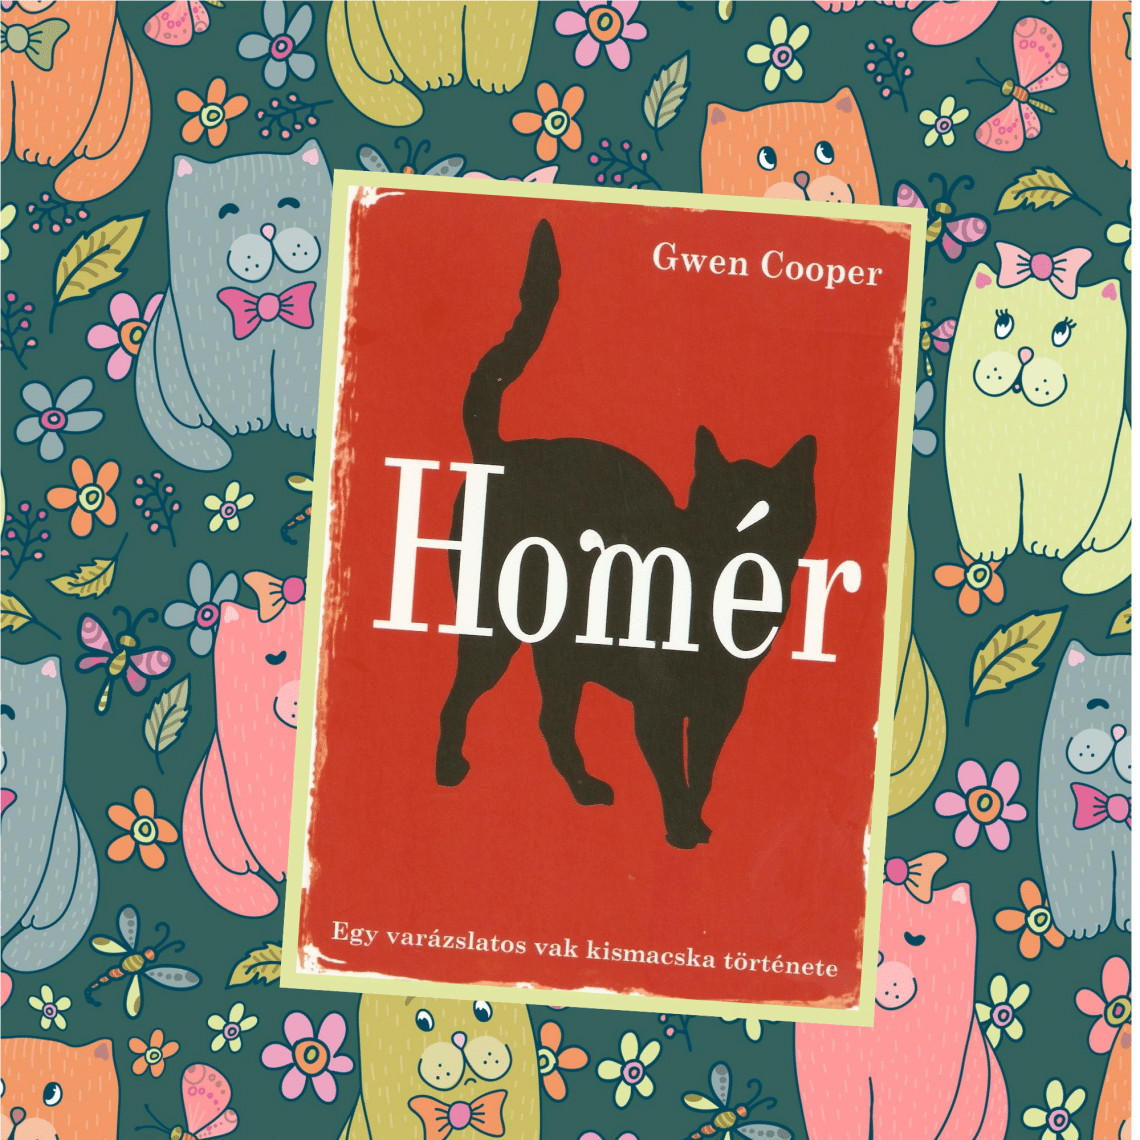 Homér – Egy varázslatos vak kismacska története (Gwen Cooper)